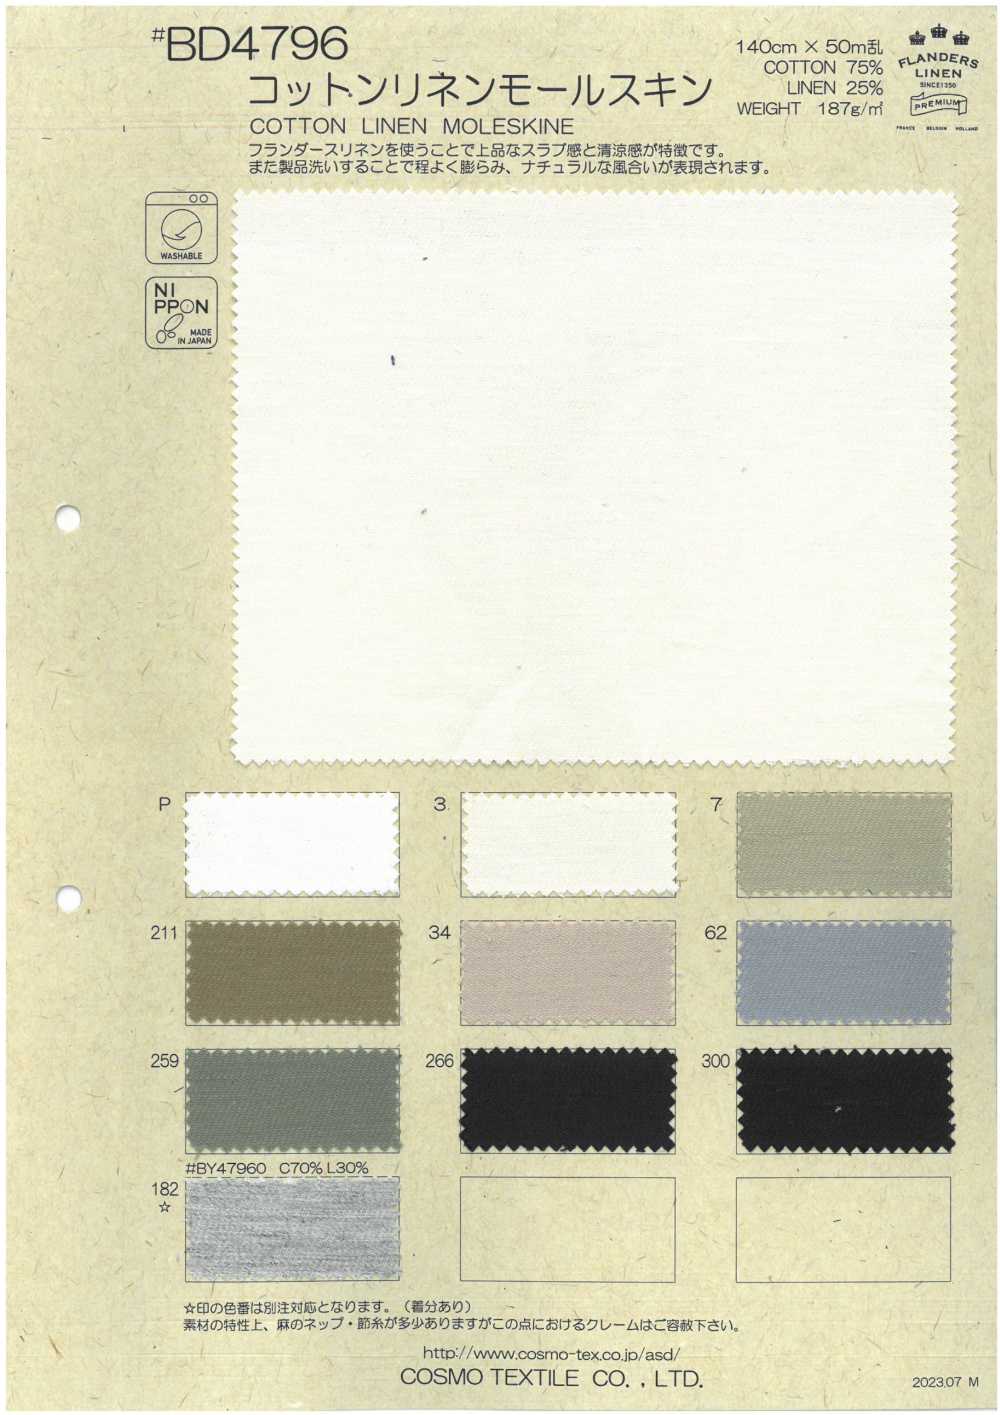 BD4796 Baumwoll-Leinen-Moleskin[Textilgewebe] COSMO TEXTILE